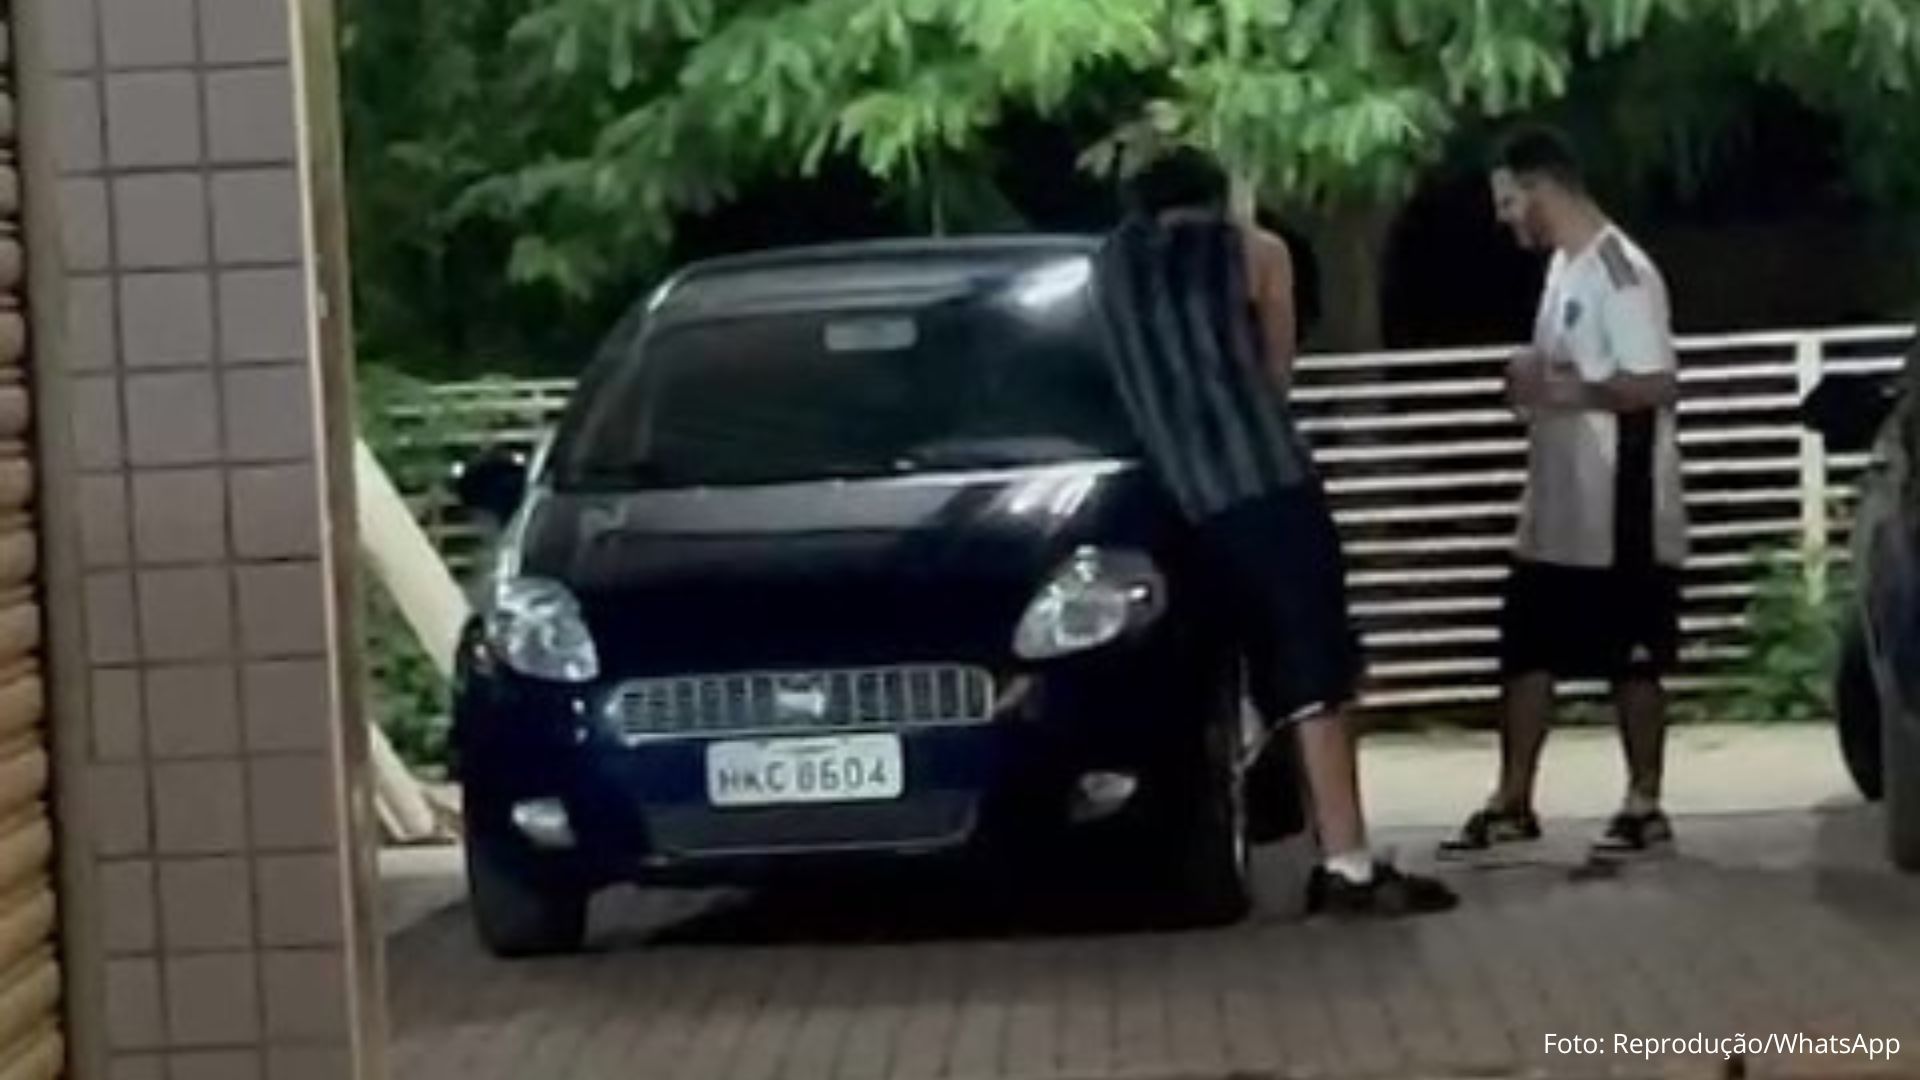 Vídeo mostra jovens quebrando retrovisores de carros na Praça dos Correios, em Itabirito